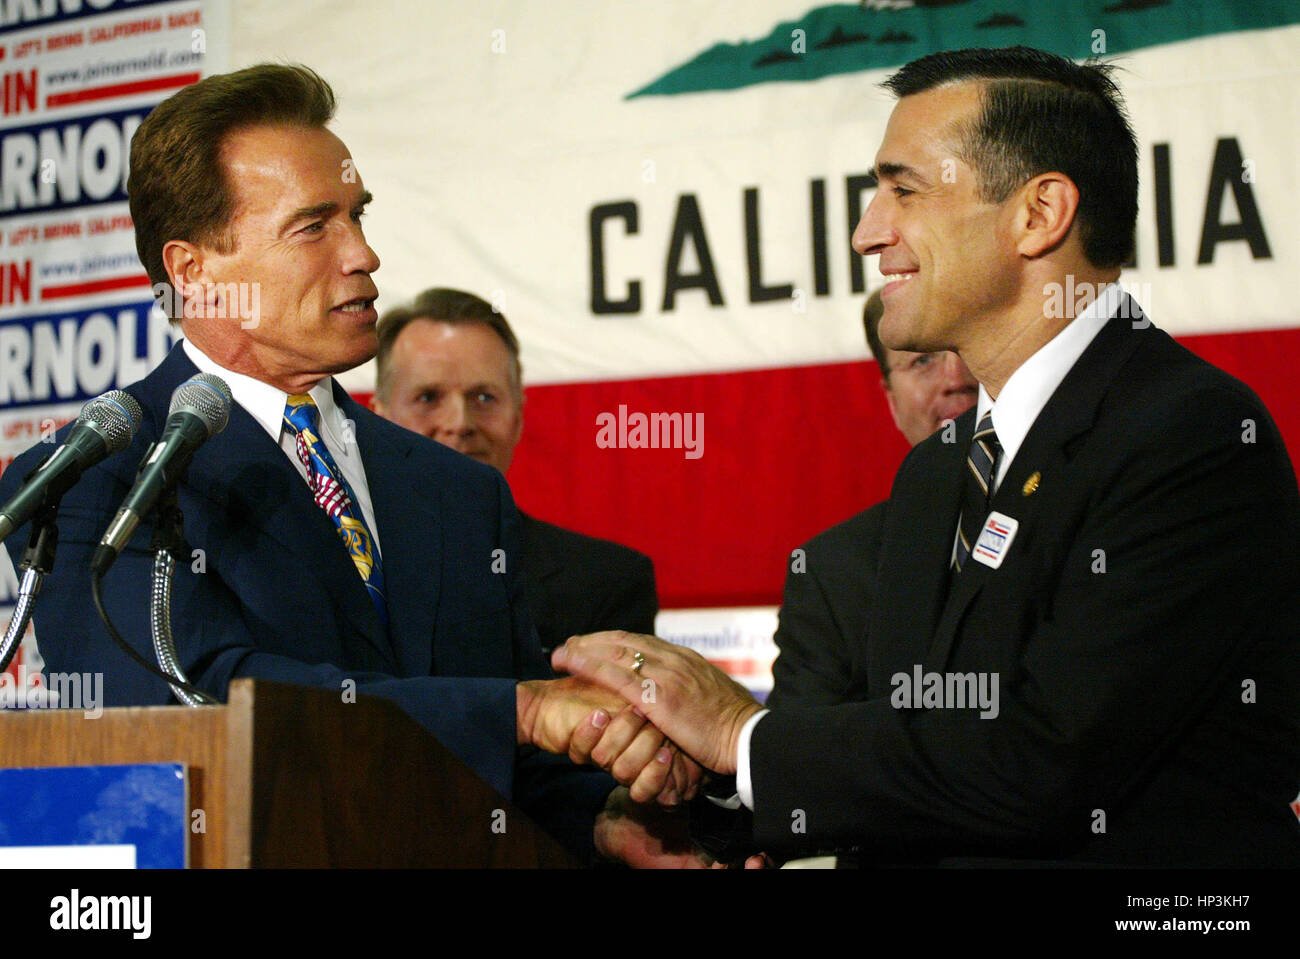 Candidat au poste de gouverneur de la Californie Arnold Schwarzenegger , gauche, serre les mains de M. Darrell Issa après qu'il ait donné son aval à Santa Monica, Californie, le vendredi 26 septembre, 2003. Issa a commencé le rappel pétition électorale. Photo par Francis Specker Banque D'Images